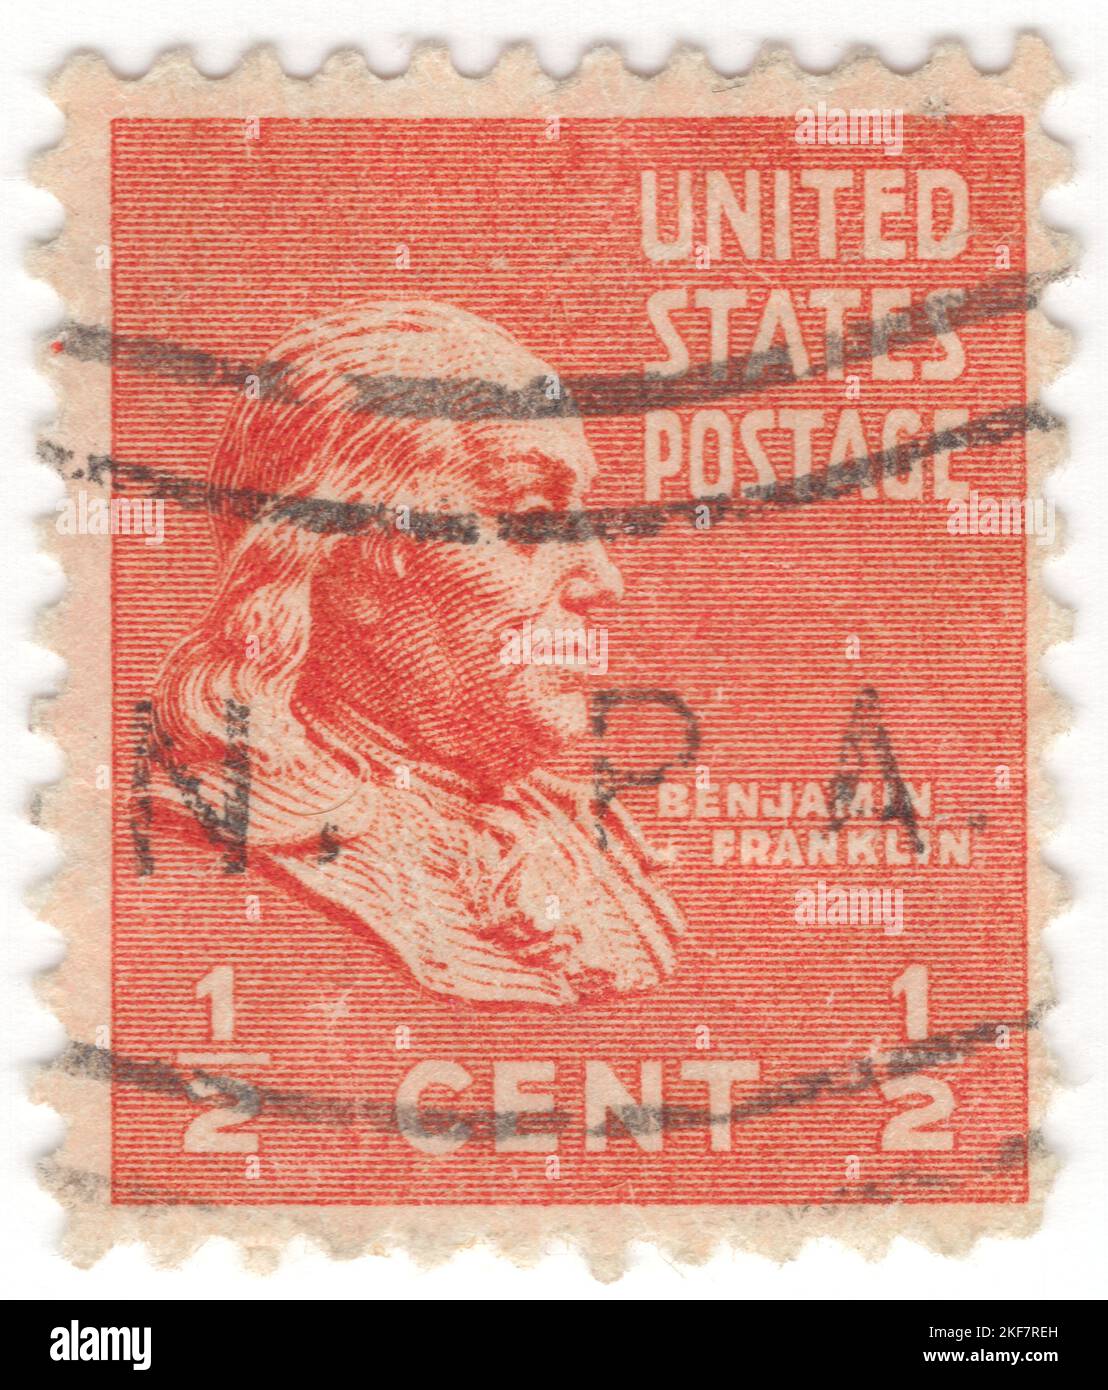 USA - 1938: Un timbre-poste orange de ½ cents de profondeur représentant le portrait de Benjamin Franklin. Un homme d'État américain qui était actif en tant qu'écrivain, scientifique, inventeur, diplomate, imprimeur, éditeur et philosophe politique. Parmi les principaux intellectuels de son époque, Franklin était l'un des Pères fondateurs des États-Unis, rédacteur et signataire de la Déclaration d'indépendance des États-Unis, et le premier ministre des postes des États-Unis Banque D'Images